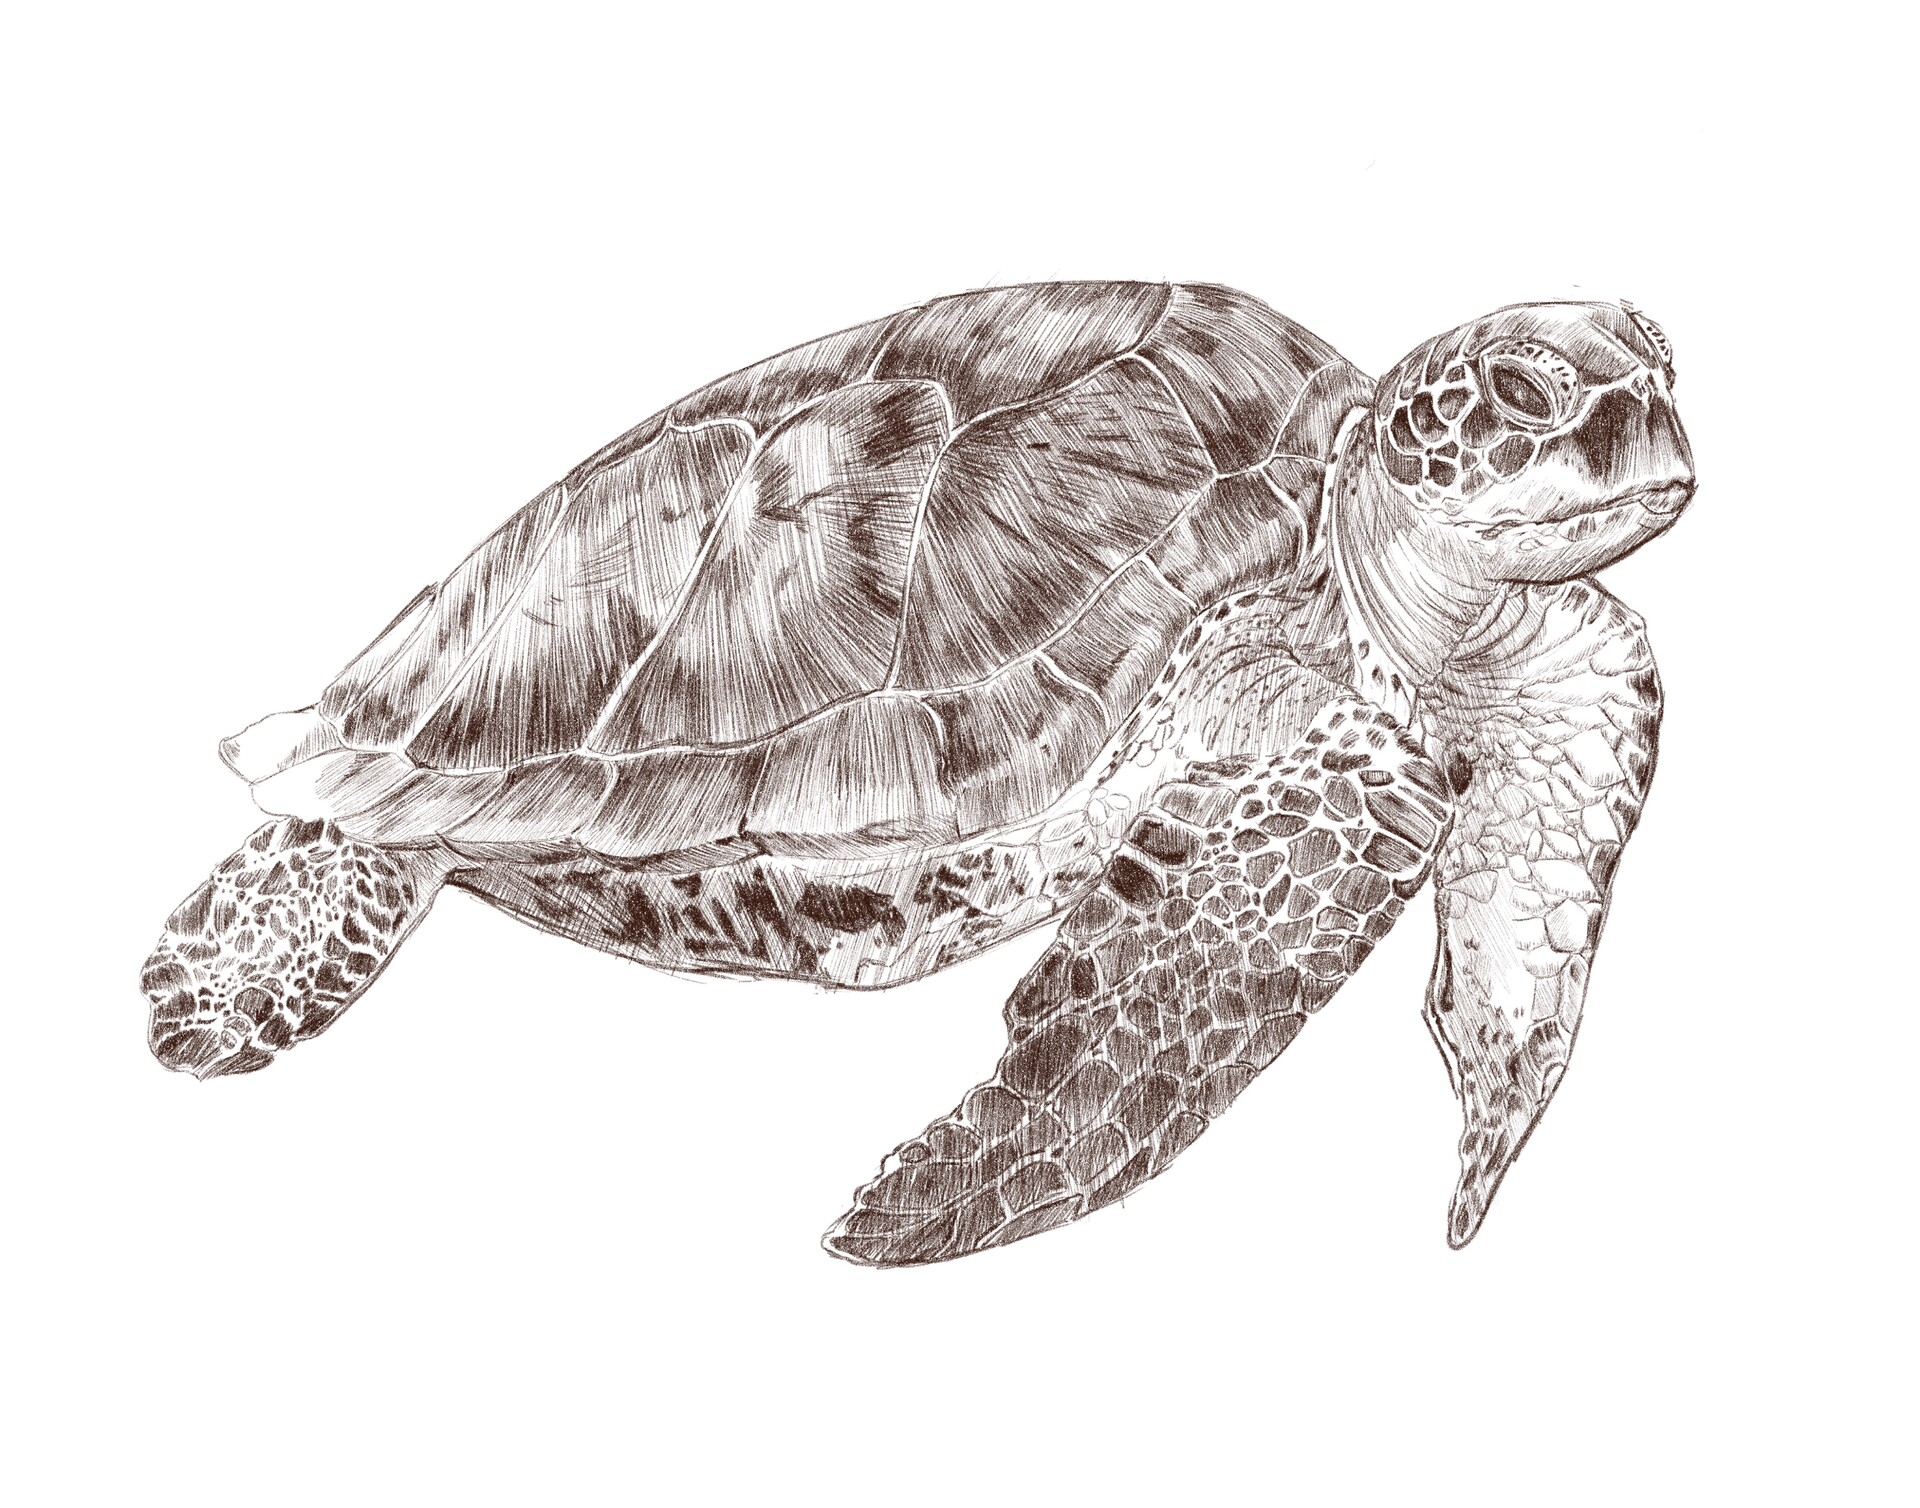 ArtStation - Sea turtle Study